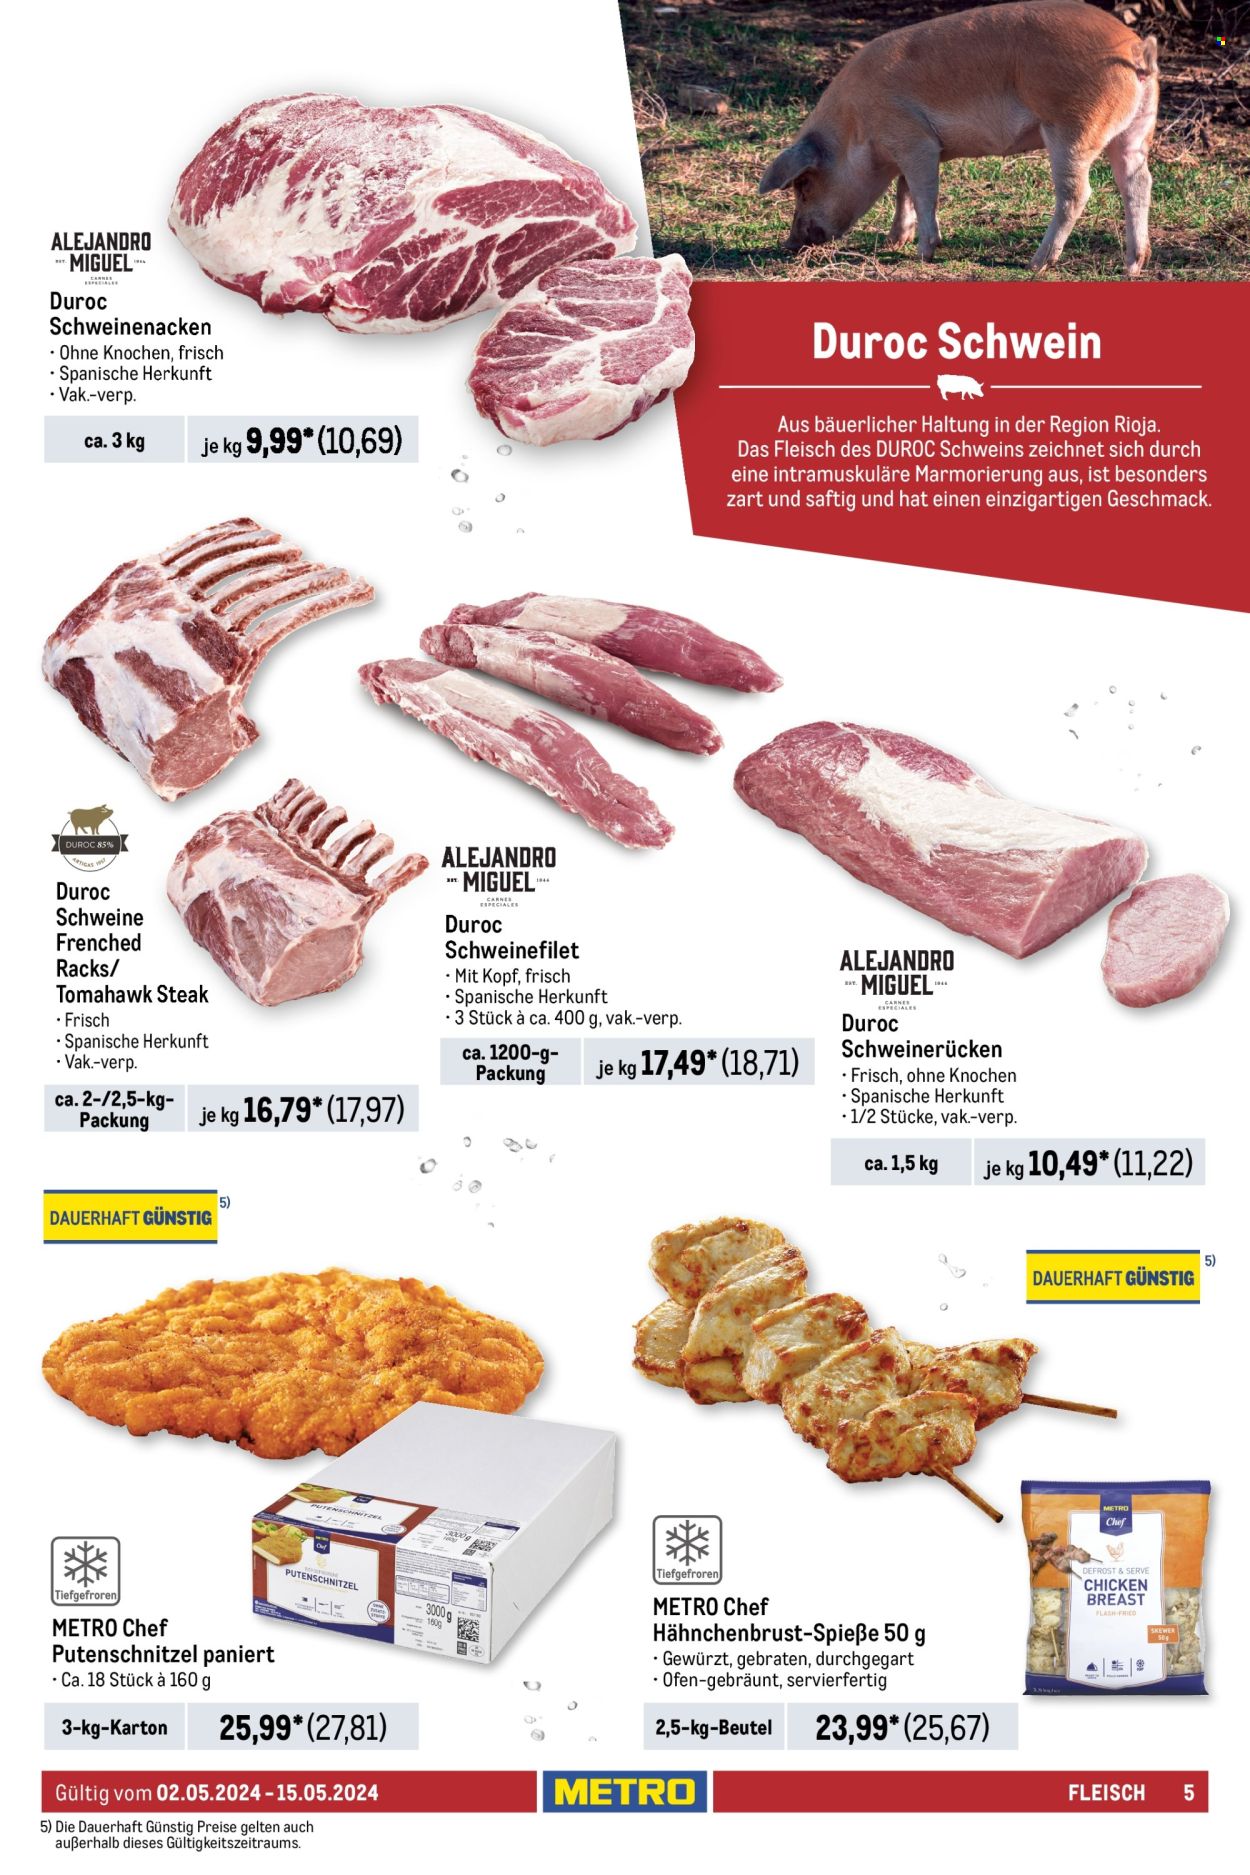 thumbnail - Prospekte Metro - 2.05.2024 - 15.05.2024 - Produkte in Aktion - Schnitzel, Steak, Putenschnitzel, Hähnchenbrustfilet, Putenfleisch, Hähnchenfleisch, Fleischspieße, Rindfleisch, Roastbeef, Hüftsteak, Rinder-Tomahawk, Schweinefleisch, Schweinerollbraten, Schweinefilet, Schweinenacken, Schweinerücken, Lammfleisch, Lammkotelett, Ofen, Top. Seite 5.